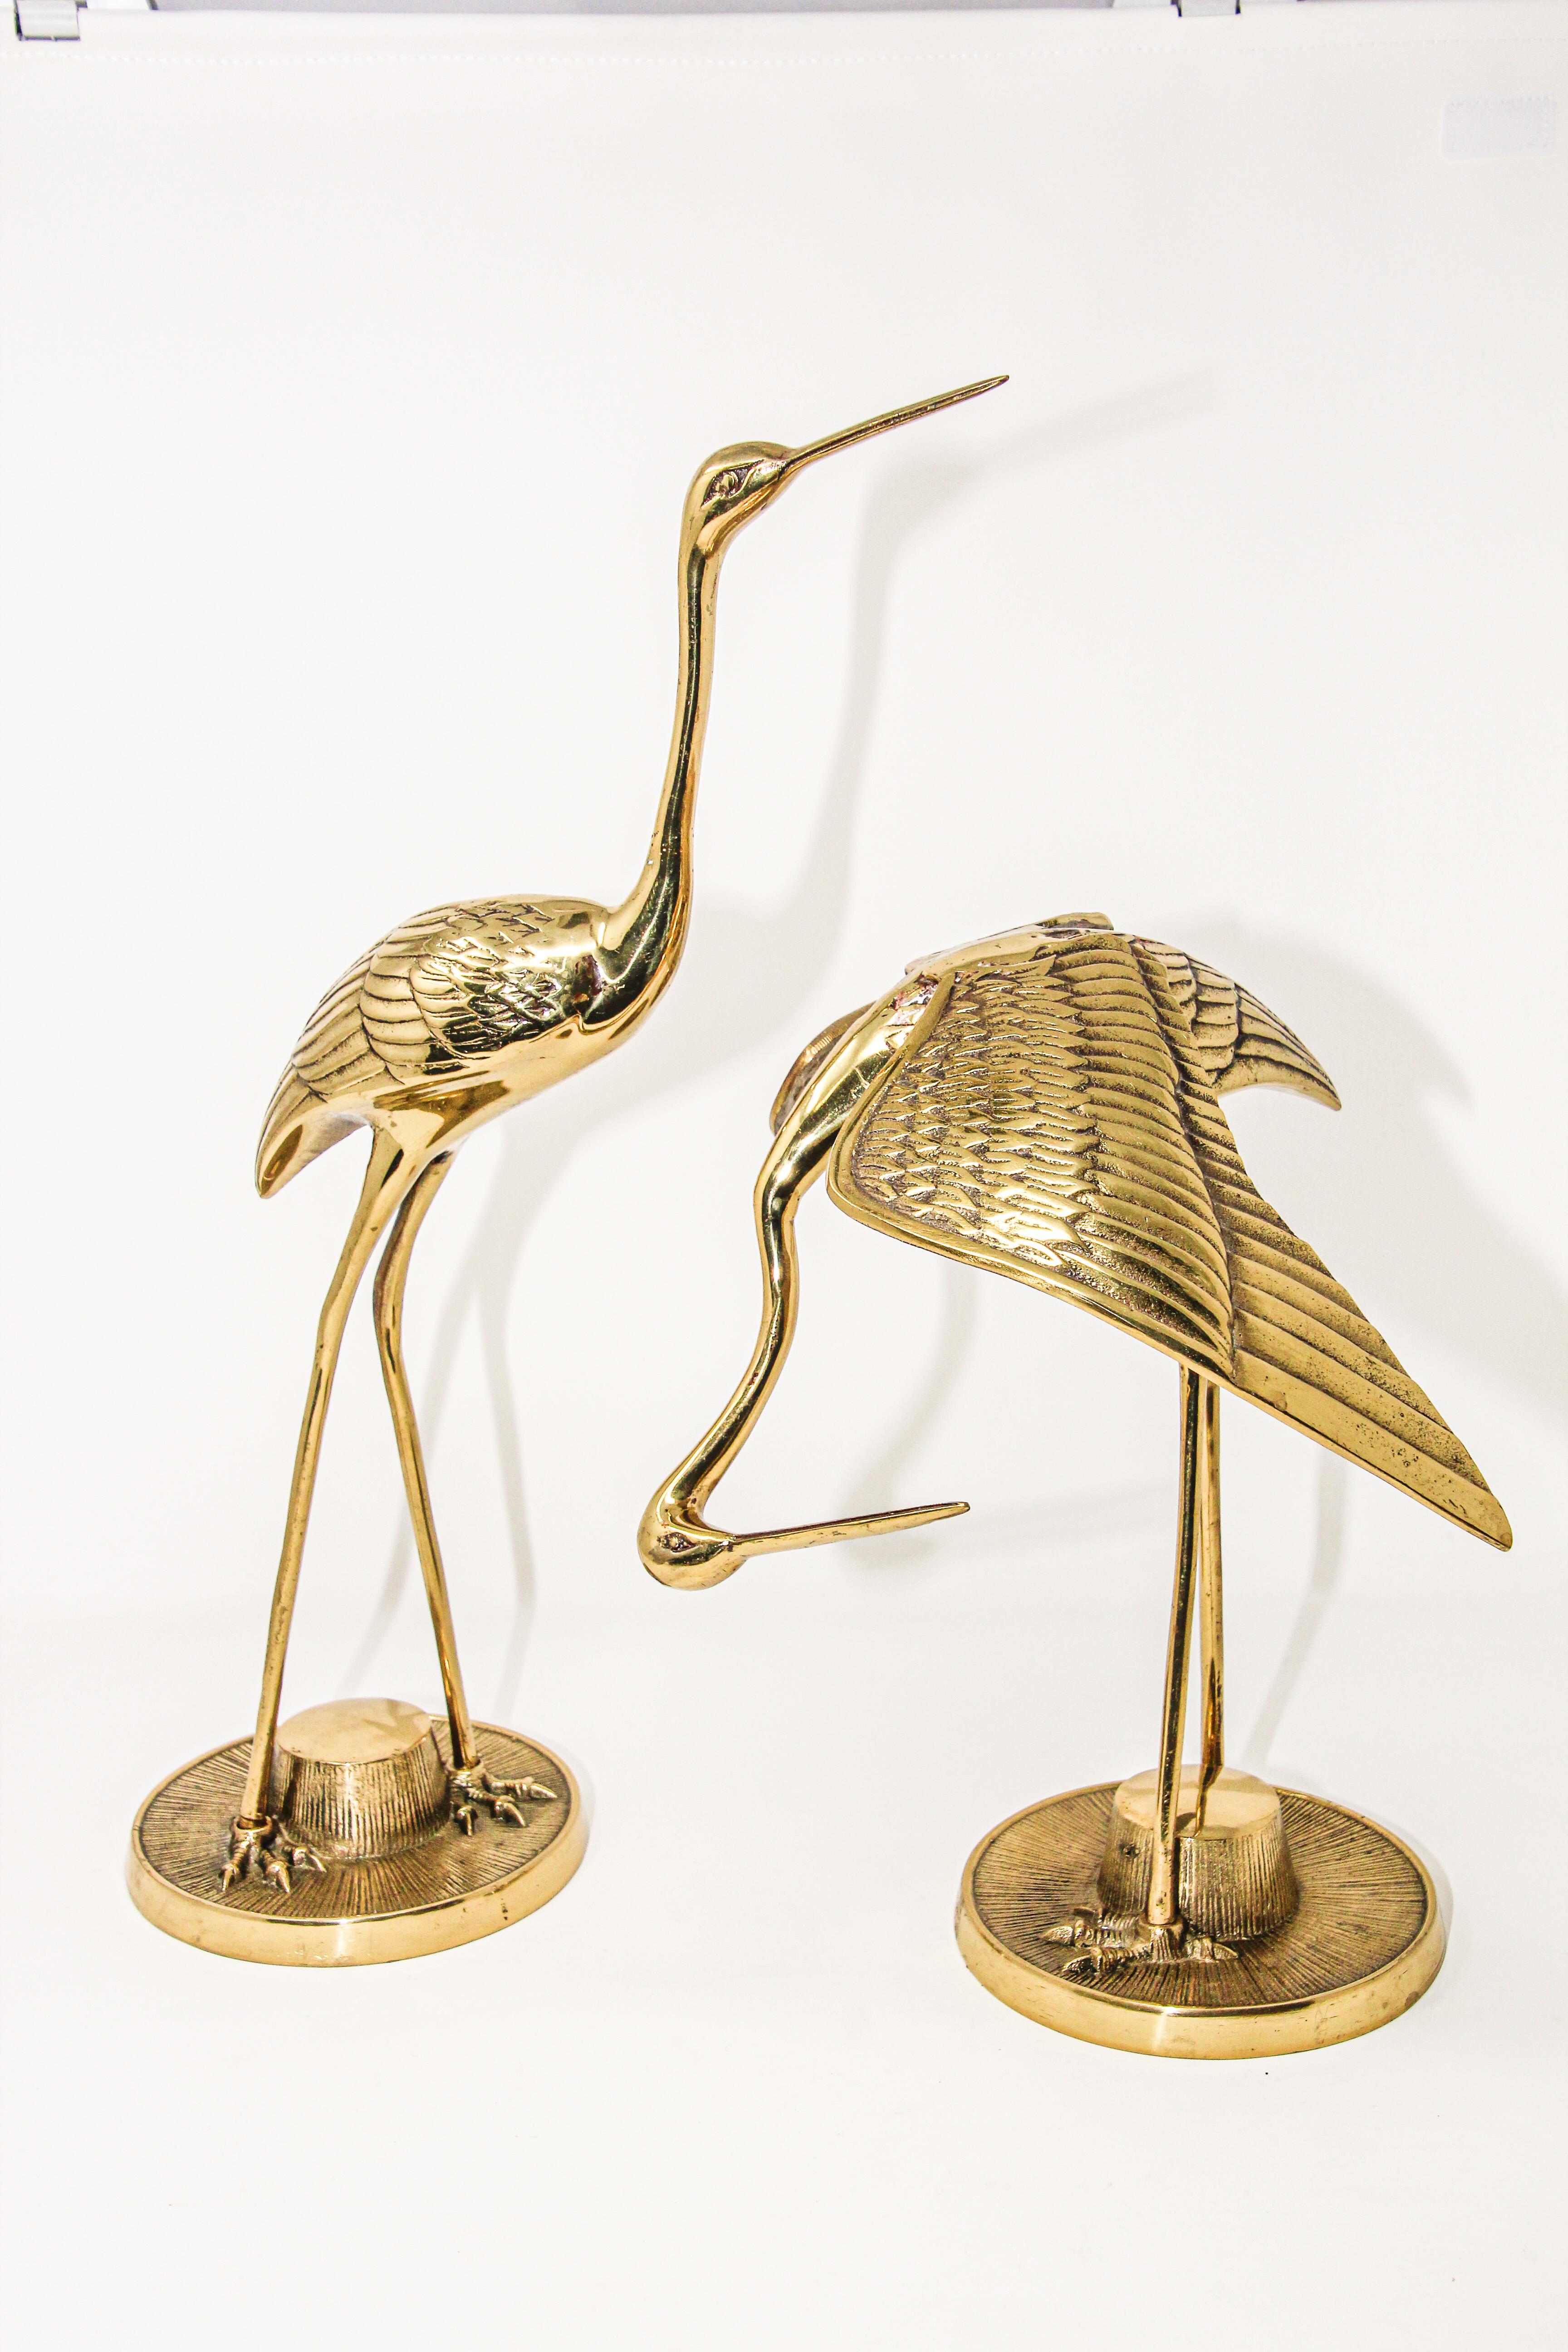 Japanese Vintage Large Scale Hollywood Regency Polished Brass Asian Crane Sculptures